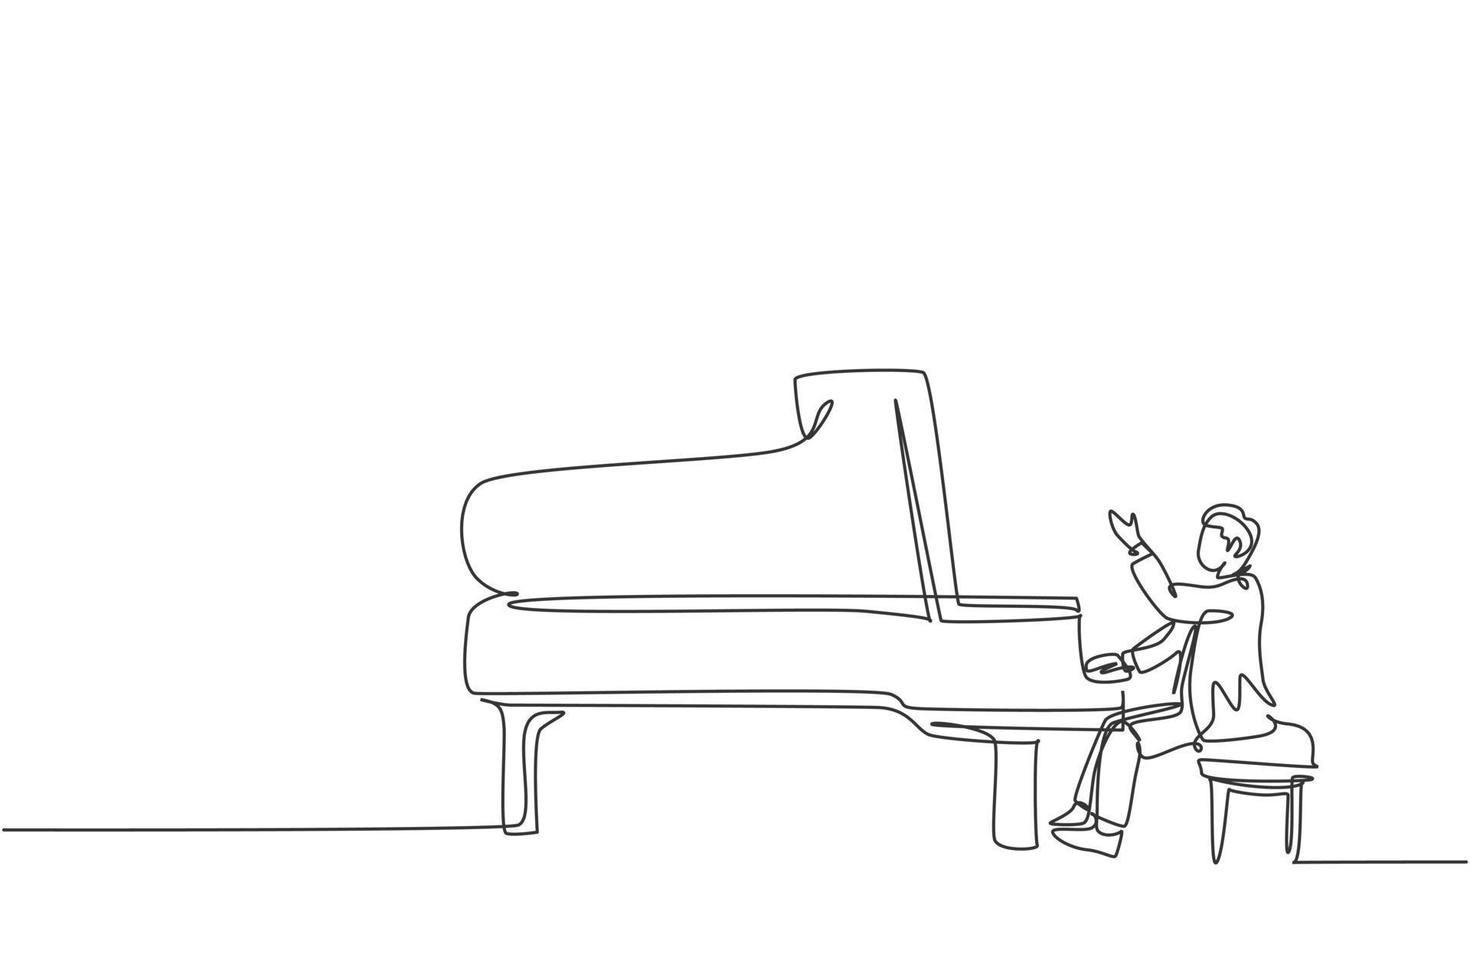 un disegno a tratteggio di un giovane pianista maschio felice che suona un pianoforte a coda classico sul palco del festival di concerti musicali. musicista artista performance concetto linea continua disegnare disegno vettoriale illustrazione